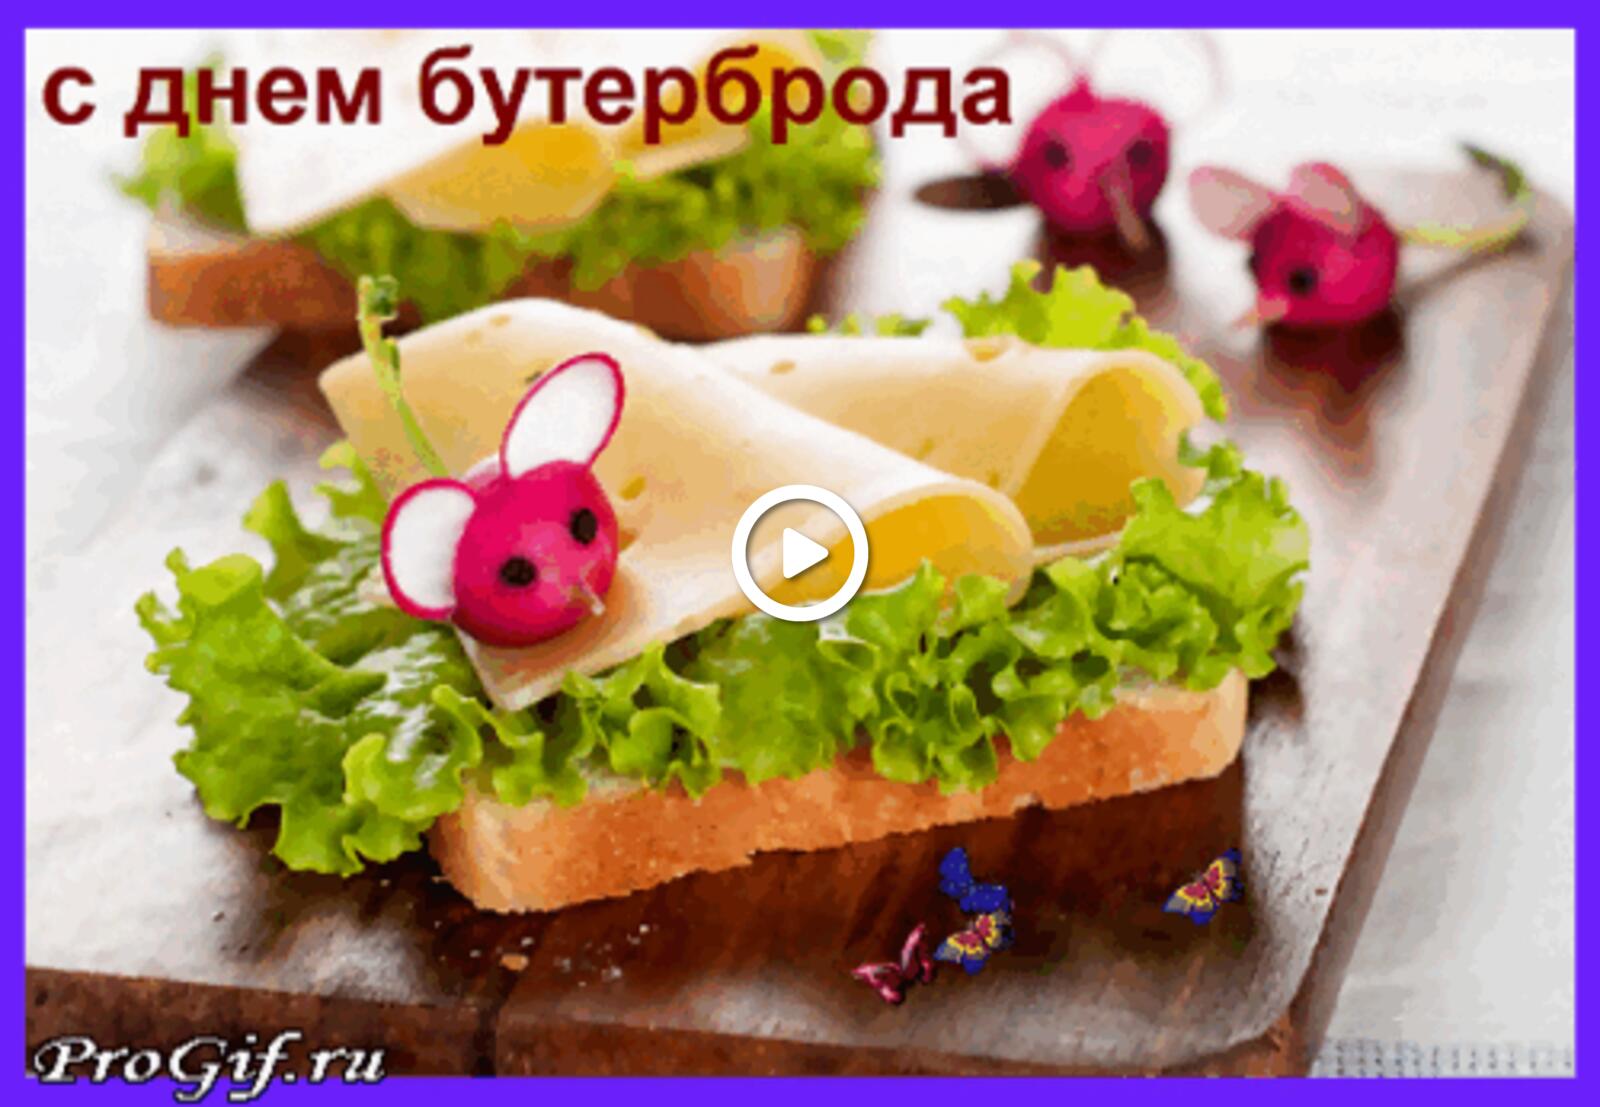 Открытка на тему бутерброд праздники с днем бутерброда бесплатно